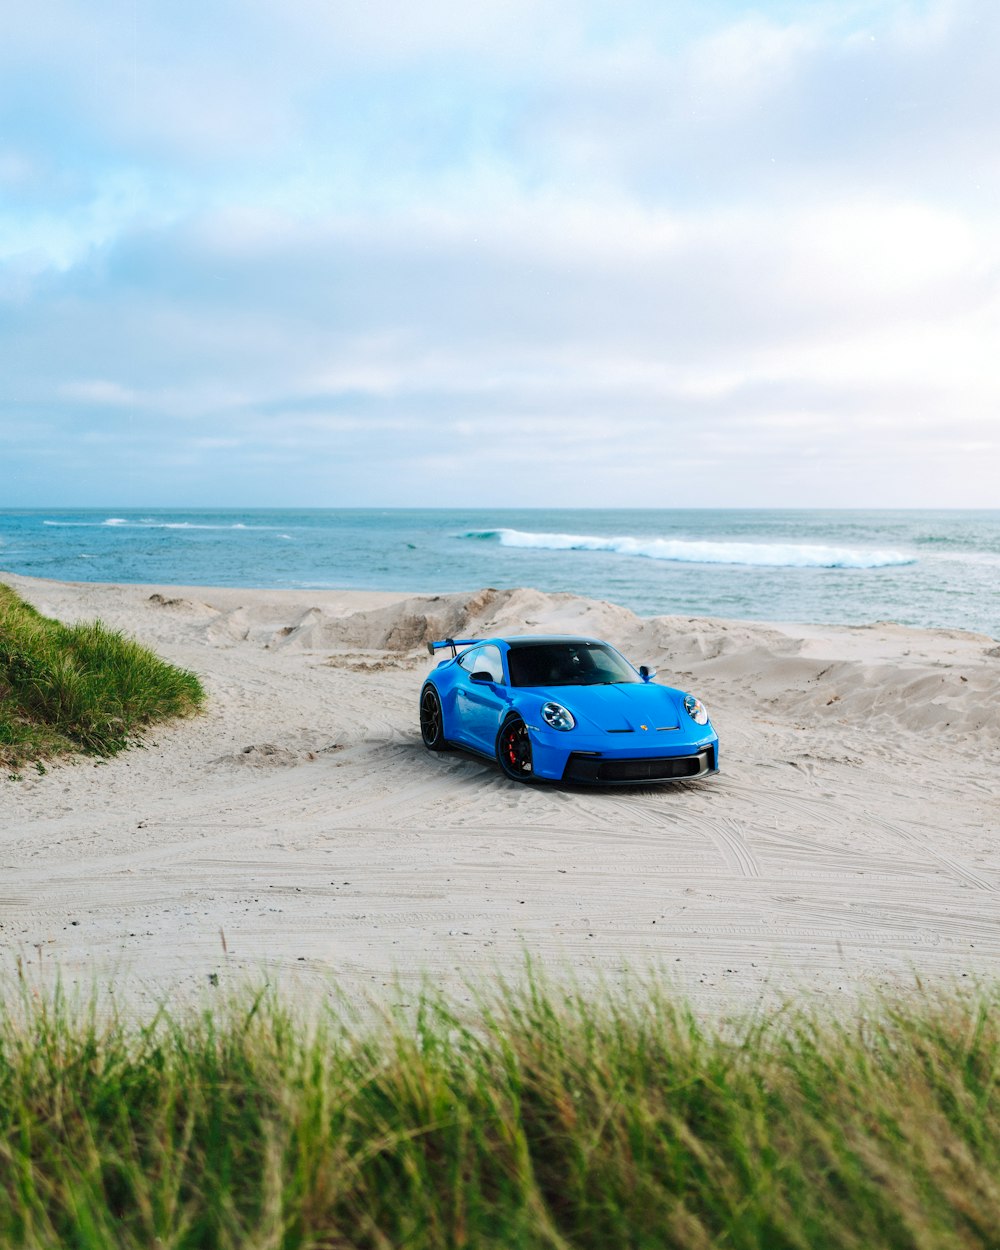 a blue sports car parked on a sandy beach